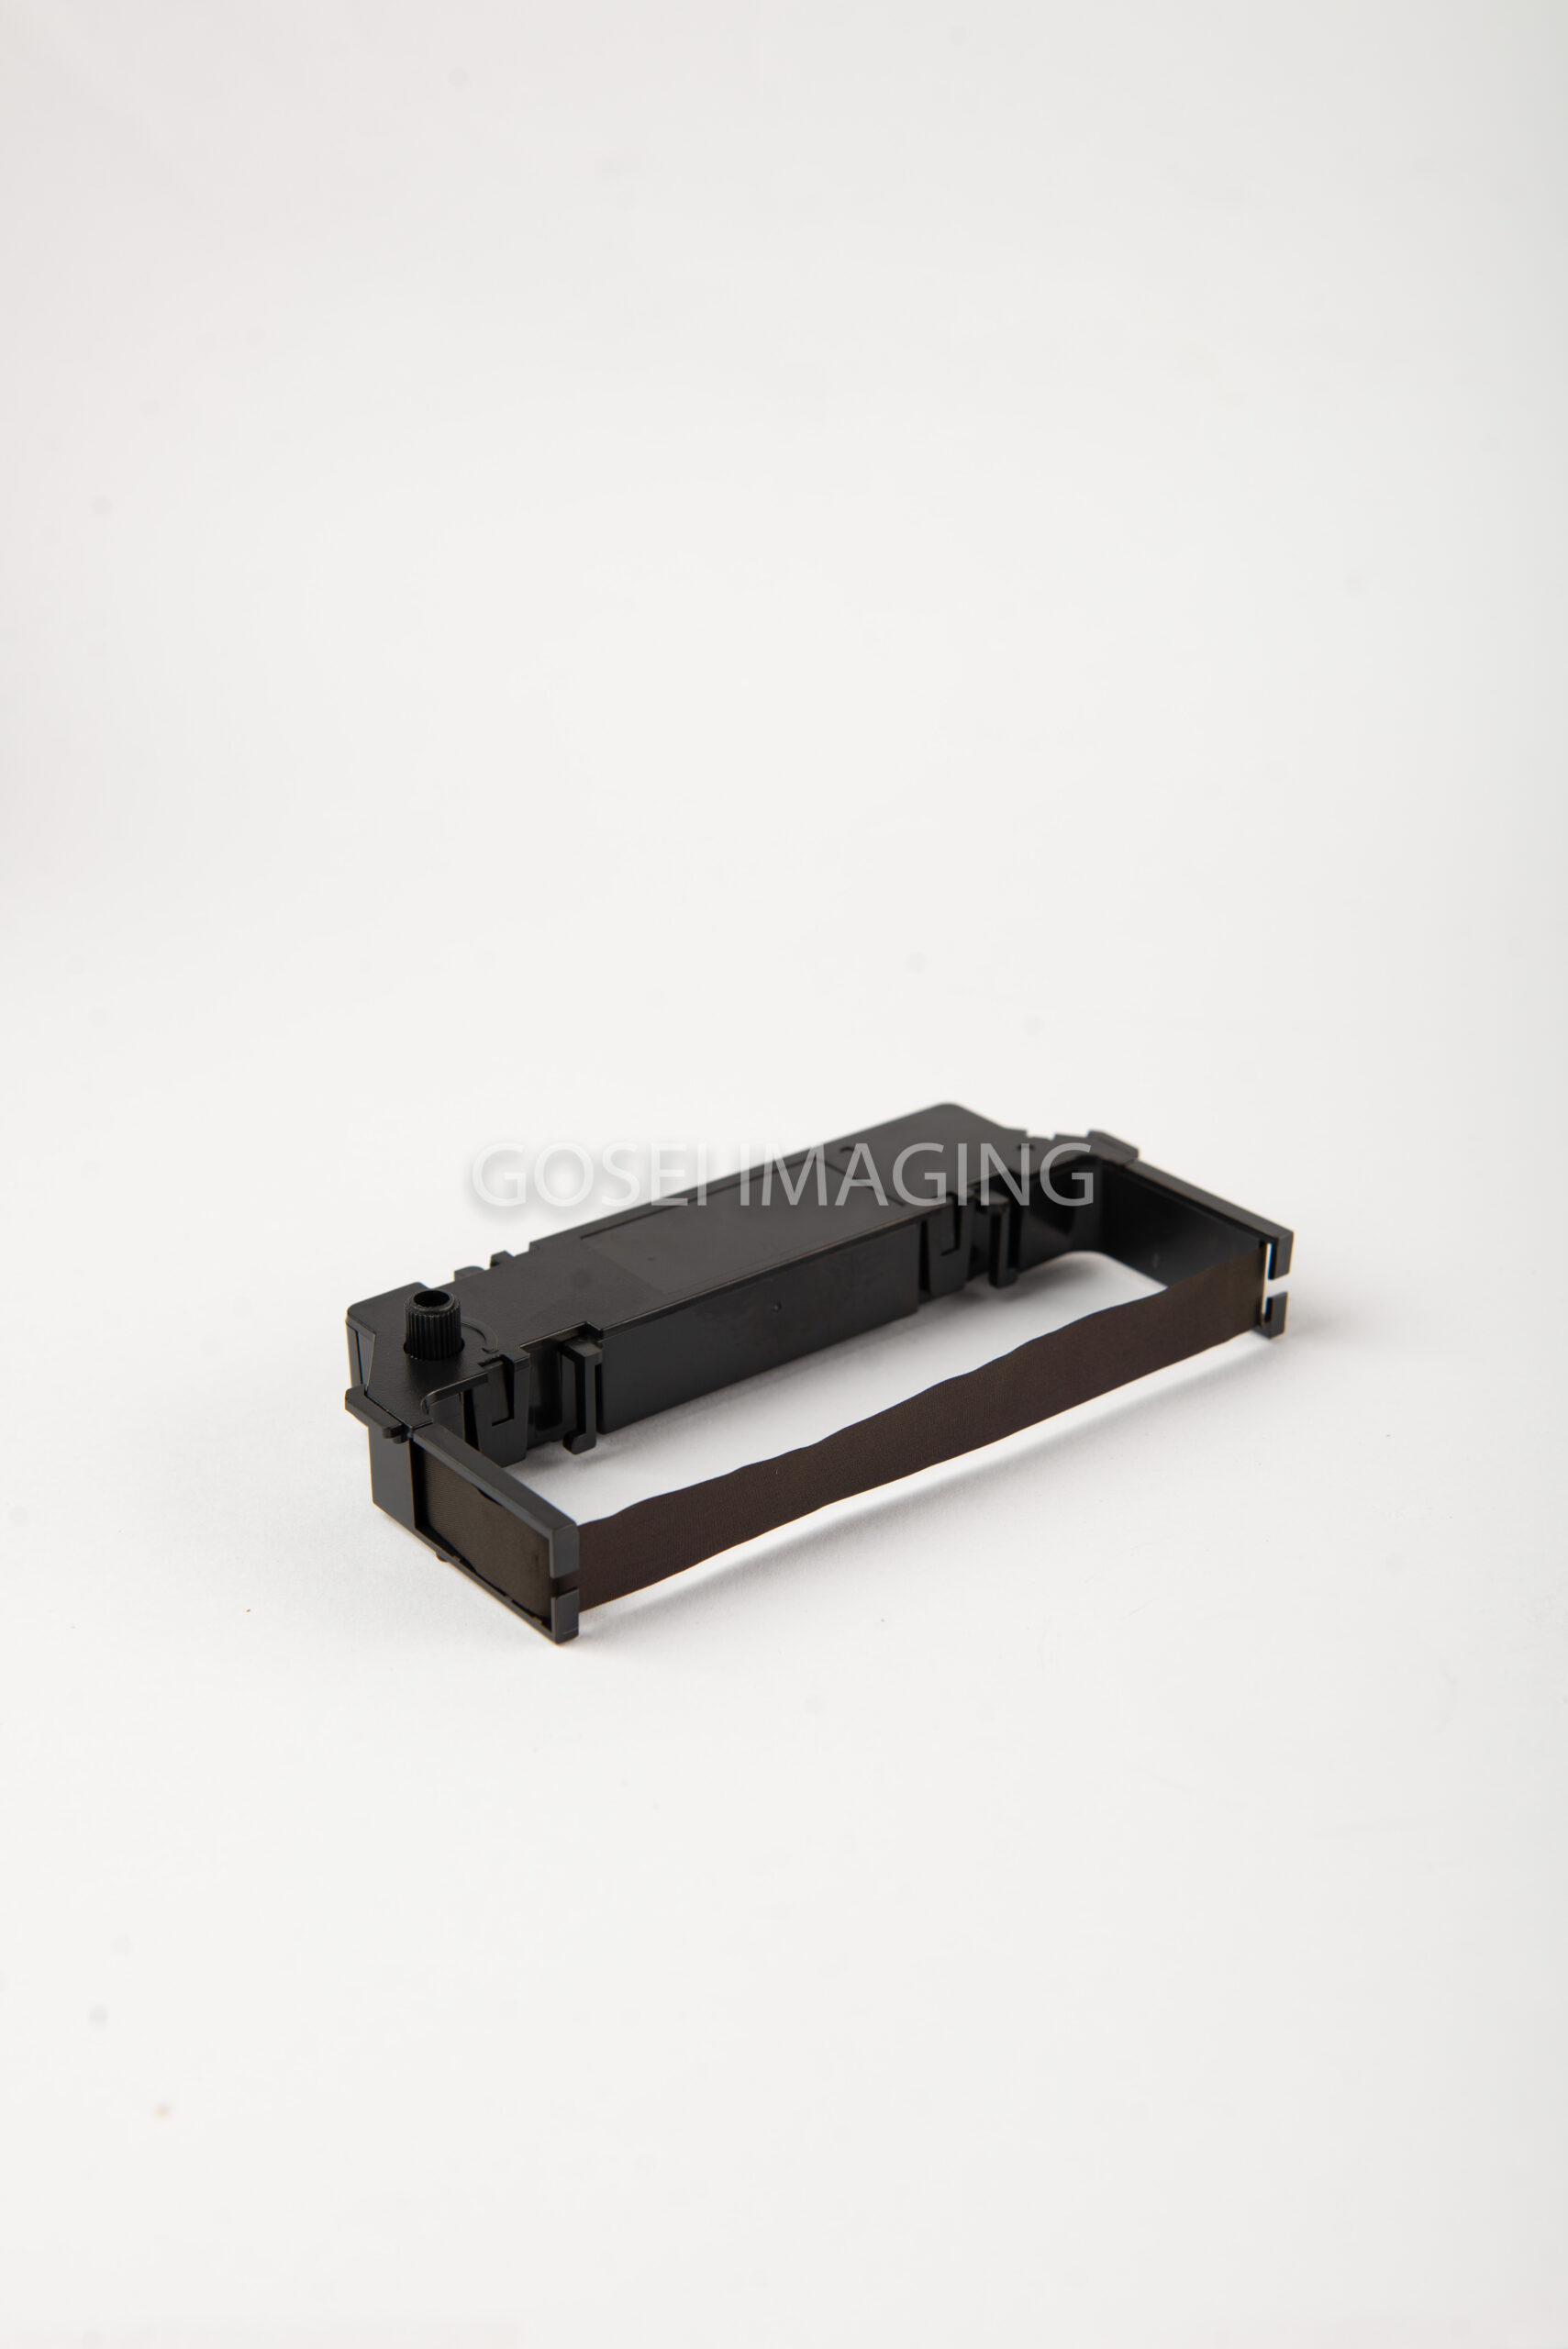 Gosei Ribbon for Star Micronics SP700 Printer (Black) [10 pcs]